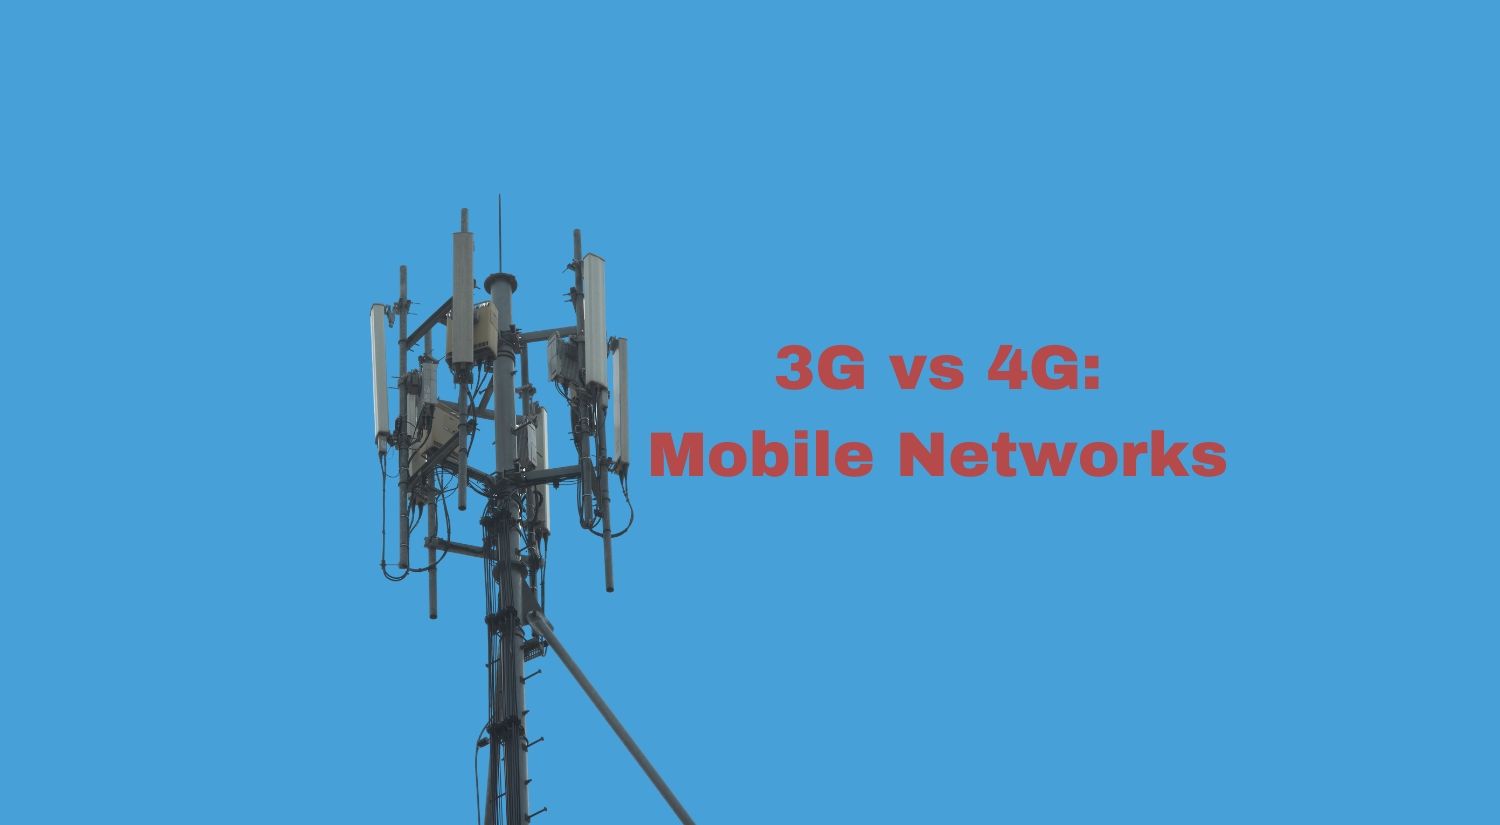 3G vs 4G technology